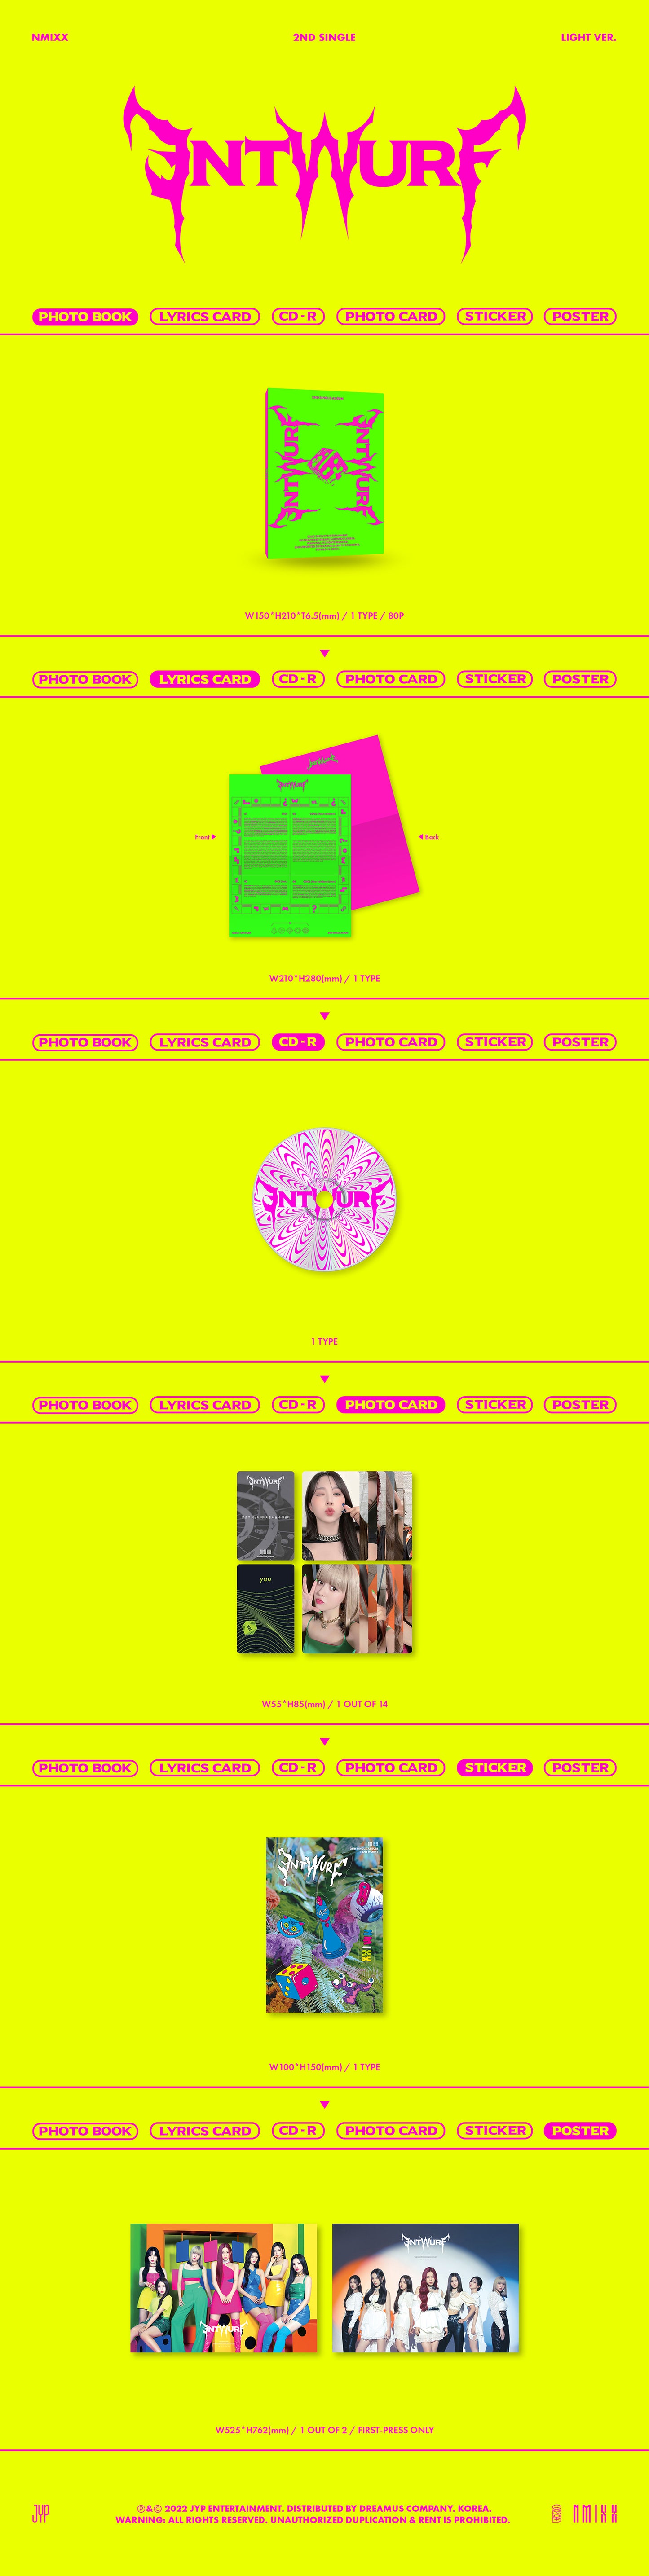 K-Pop CD Nmixx - 2nd Single Album 'Entwurf'